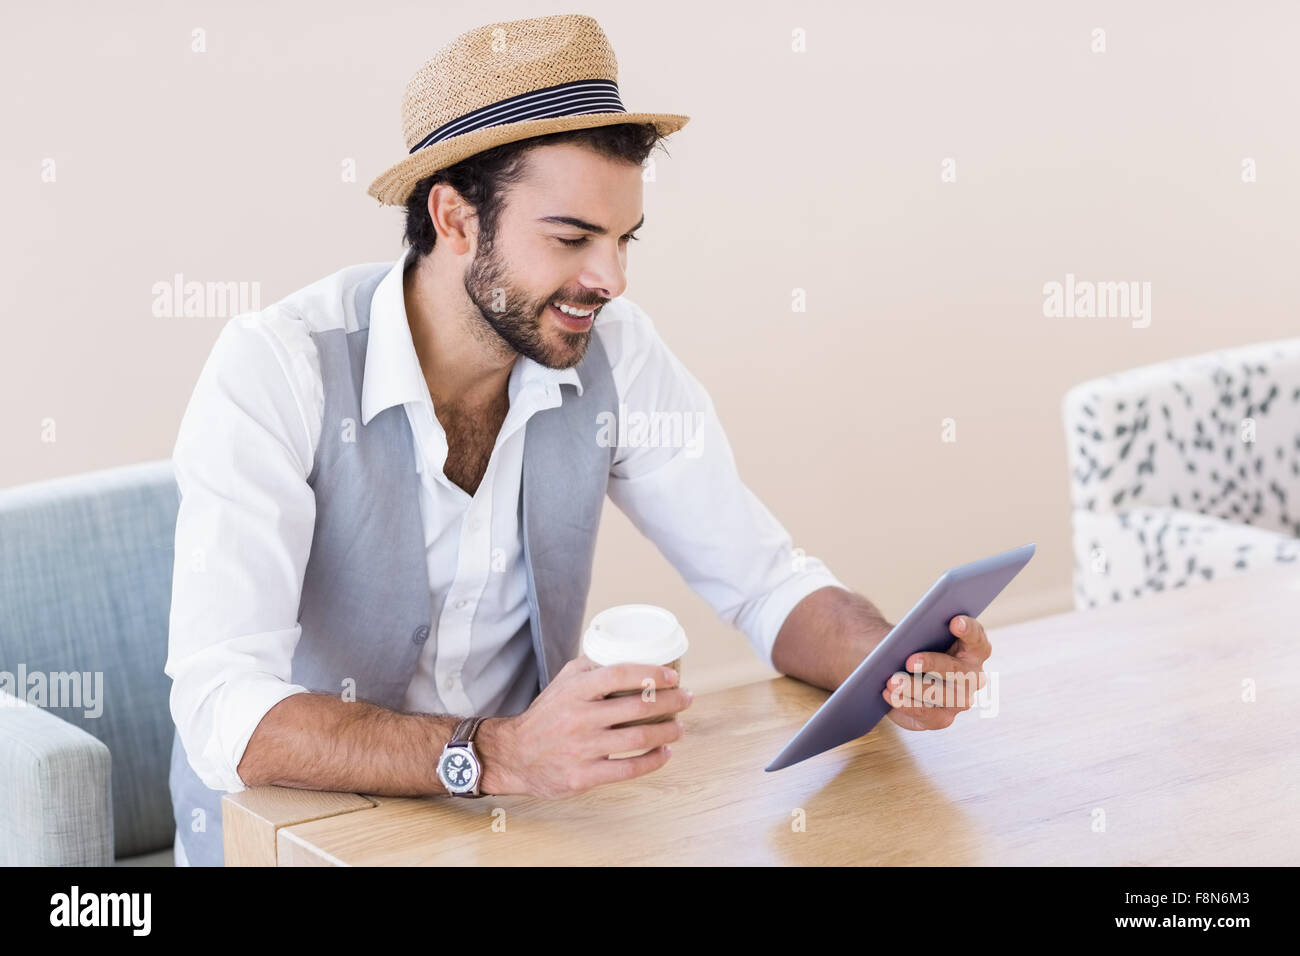 Hombre sonriente Celebración de tabletas y copa desechable Foto de stock